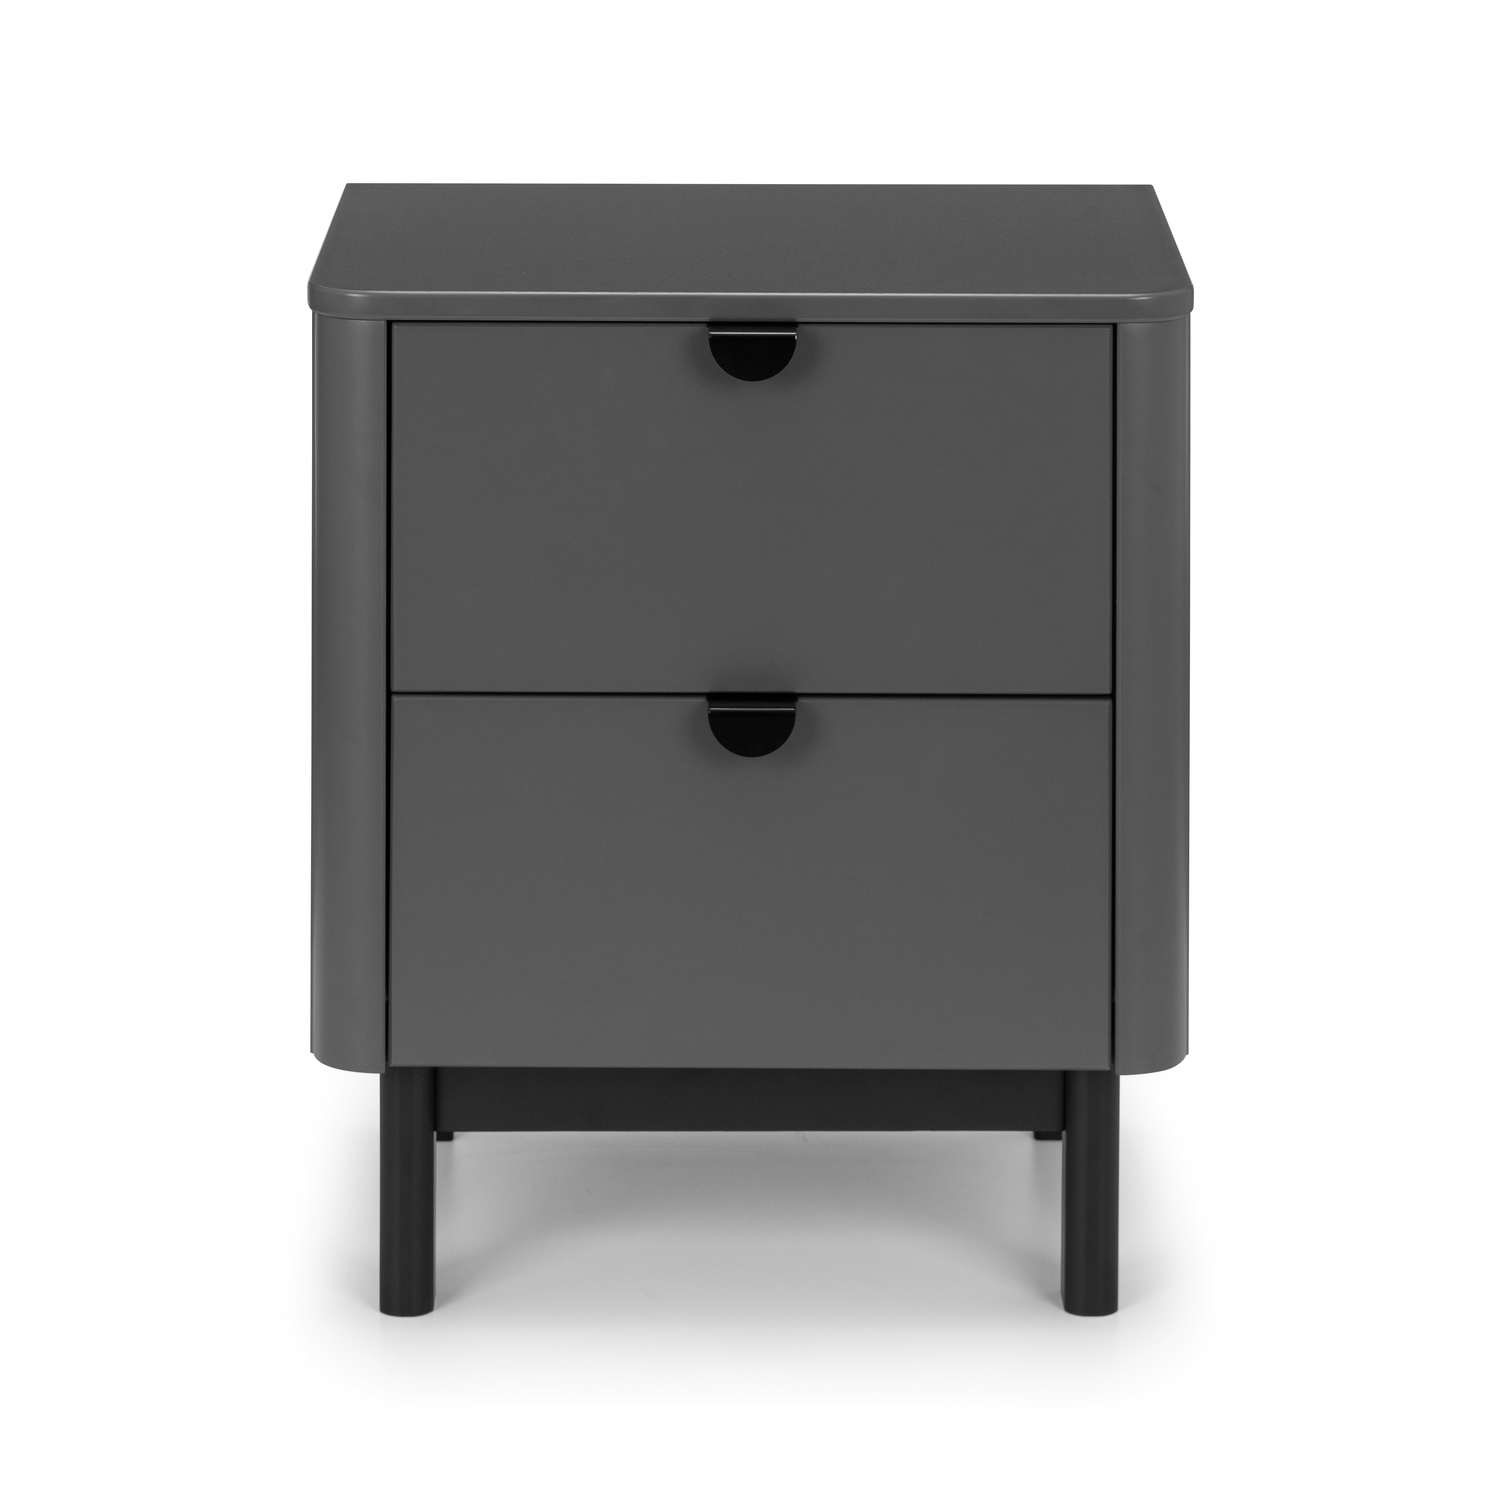 Read more about Dark grey modern 2 drawer bedside table with legs chloe julian bowen